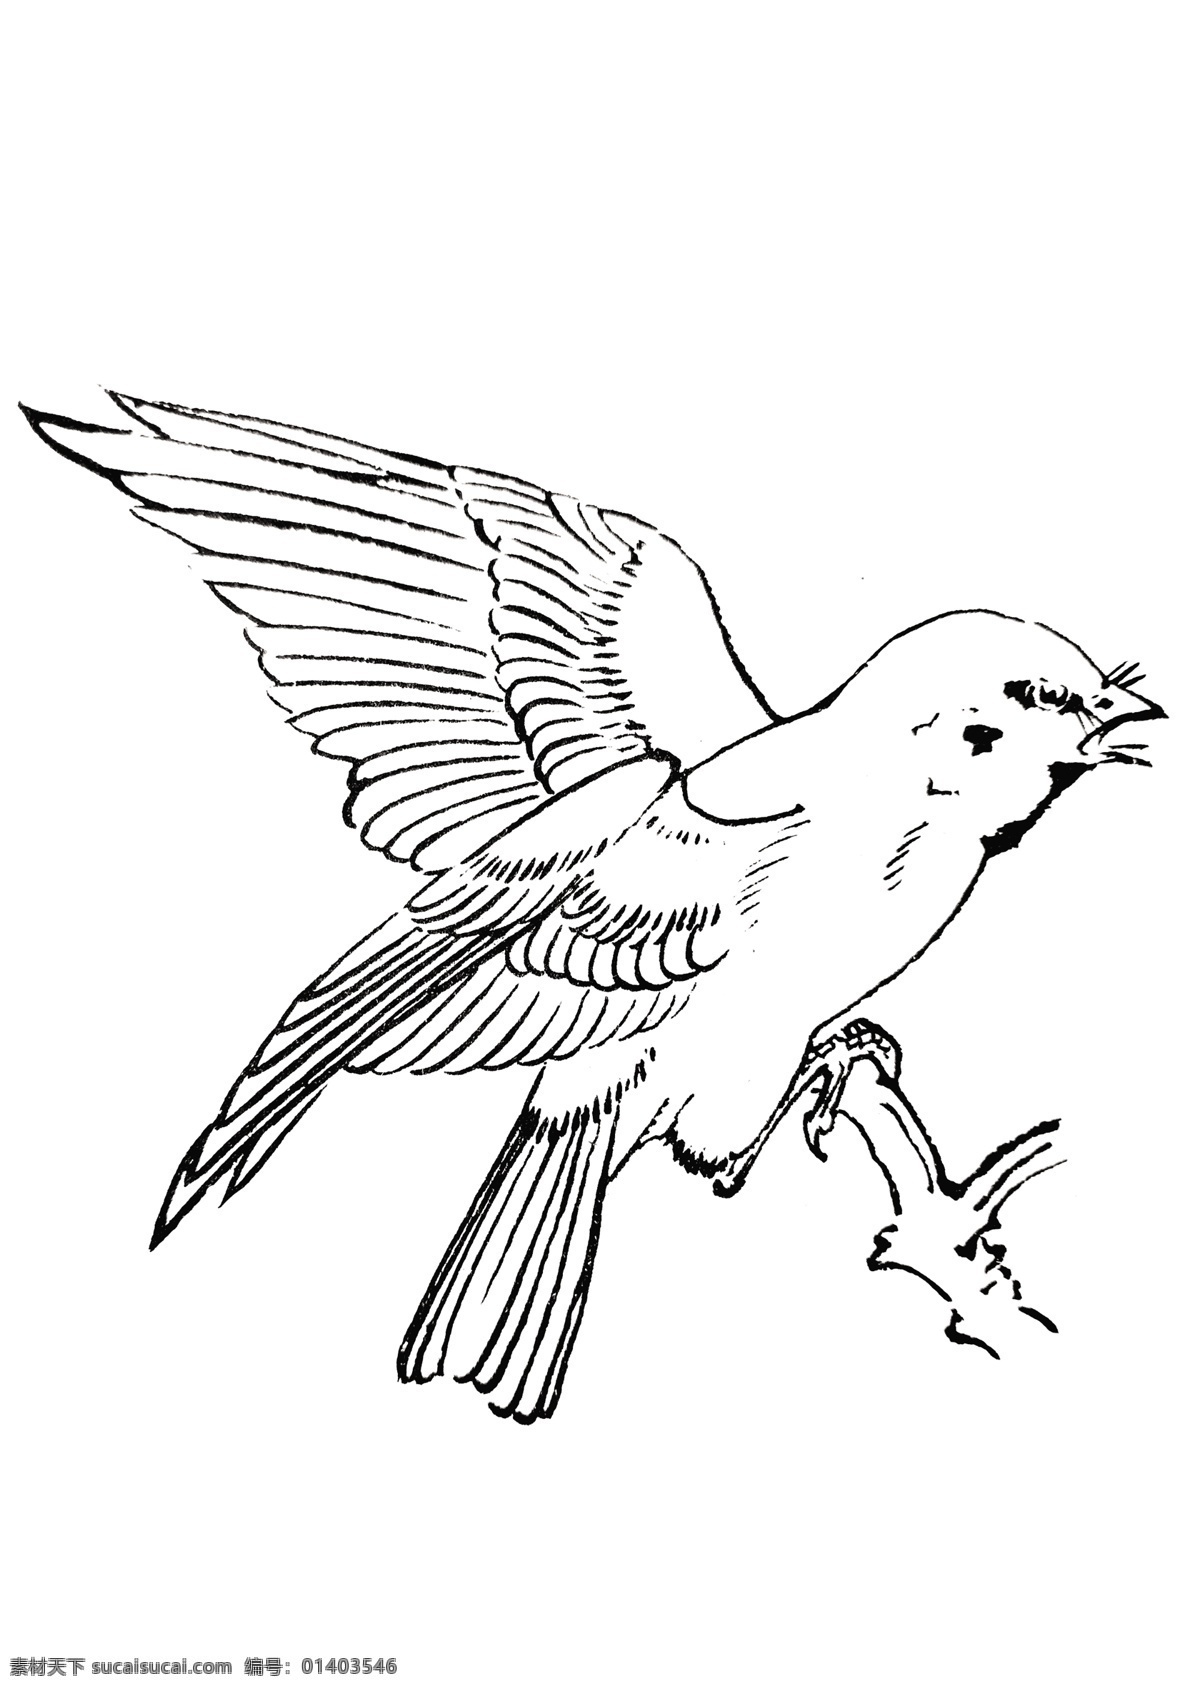 麻雀 线描 手绘 鸟 白描 飞禽 飞鸟 手稿 分层